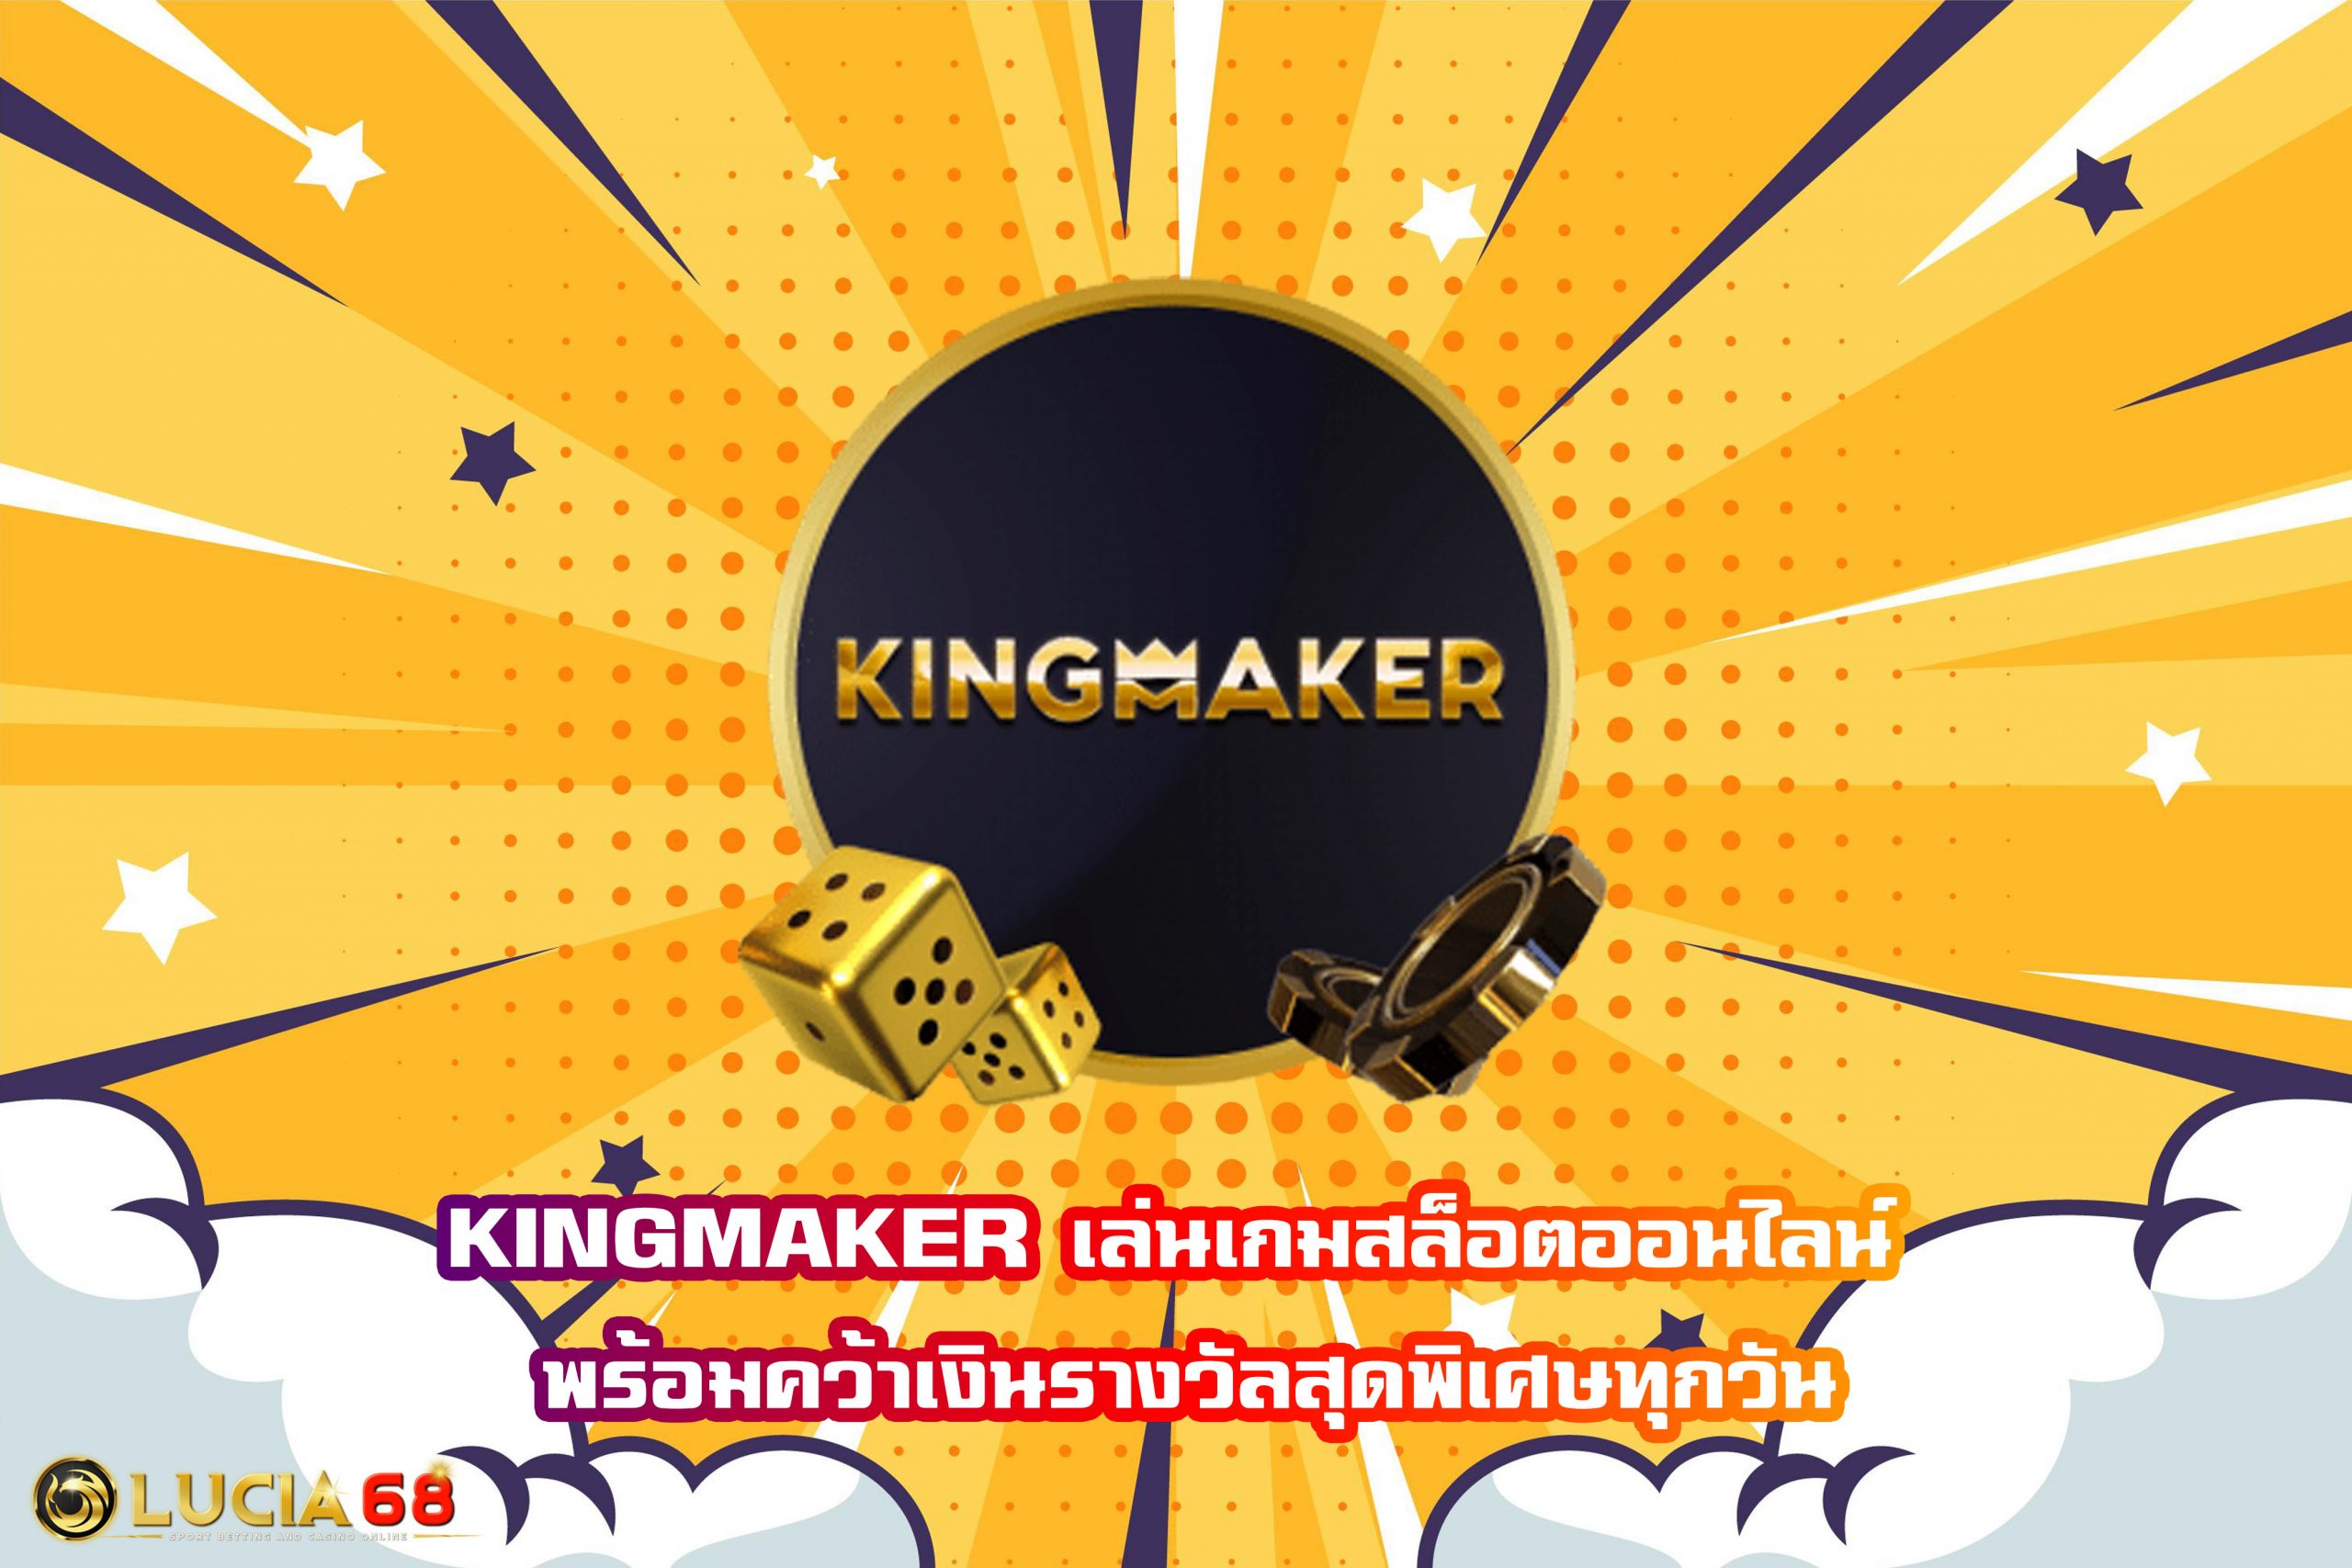 KINGMAKER เล่นเกมสล็อตออนไลน์ พร้อมคว้าเงินรางวัลสุดพิเศษทุกวัน